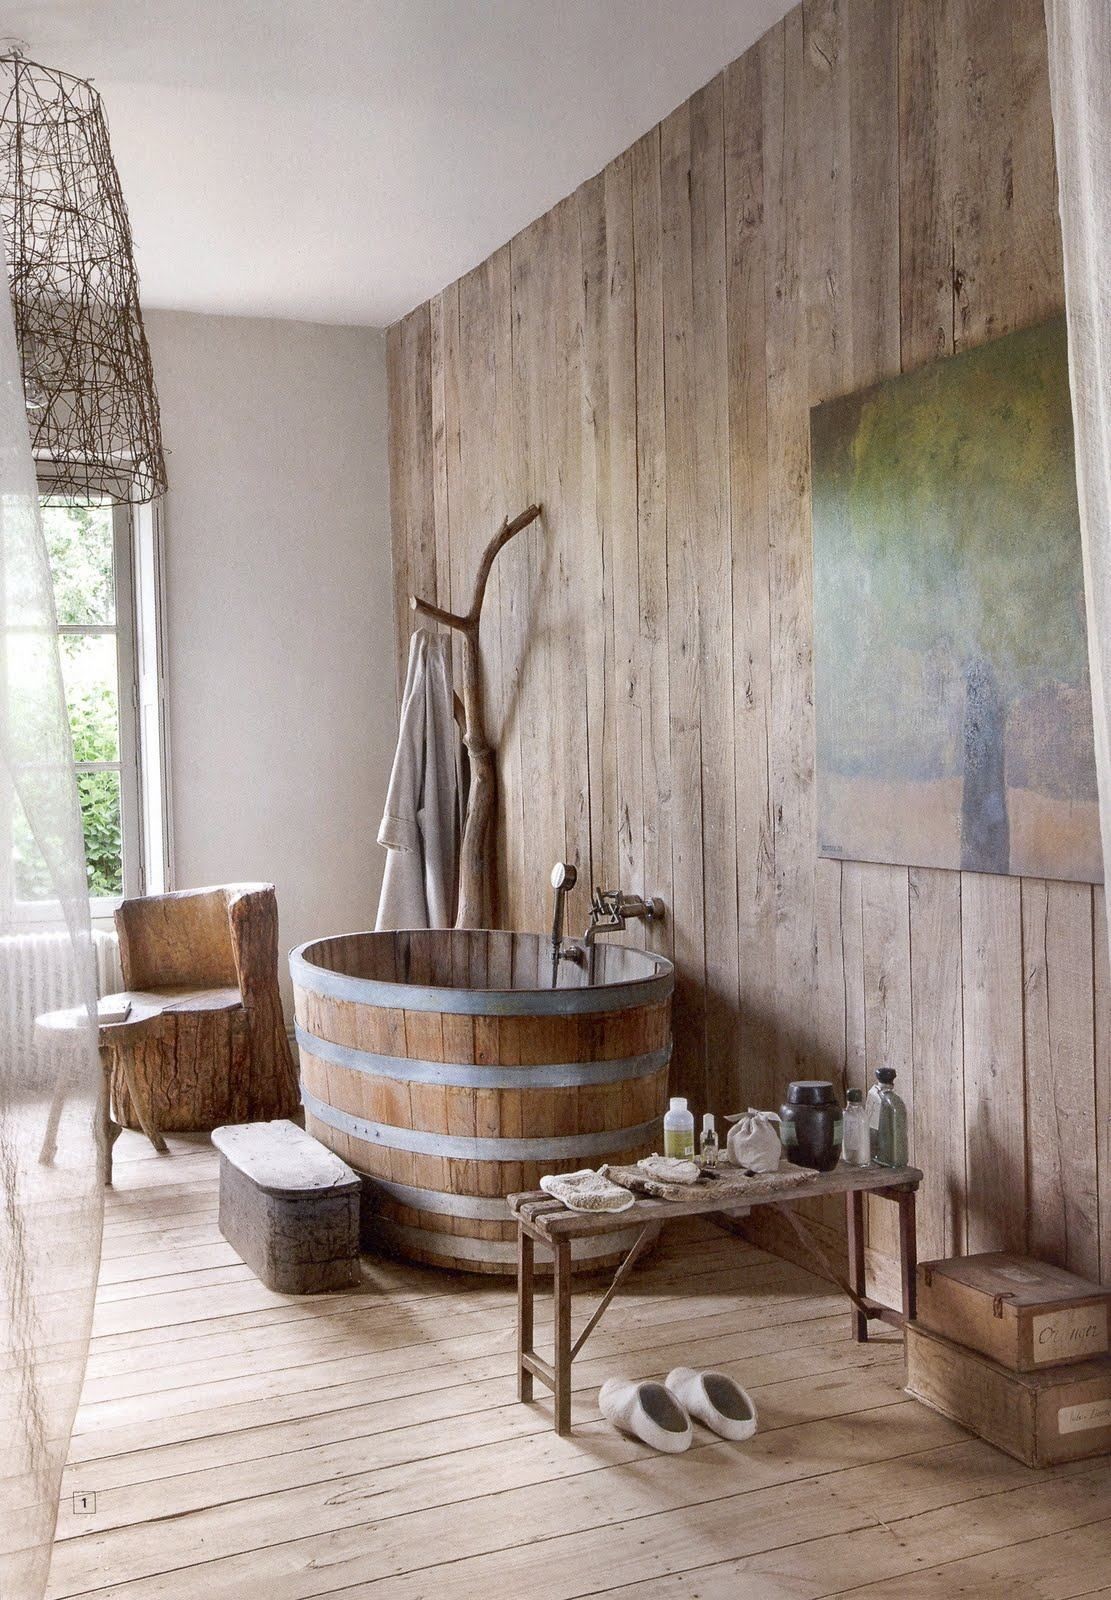 Décor do dia: banheiro com decoração rústica e banheira de madeira (Foto: Divulgação)